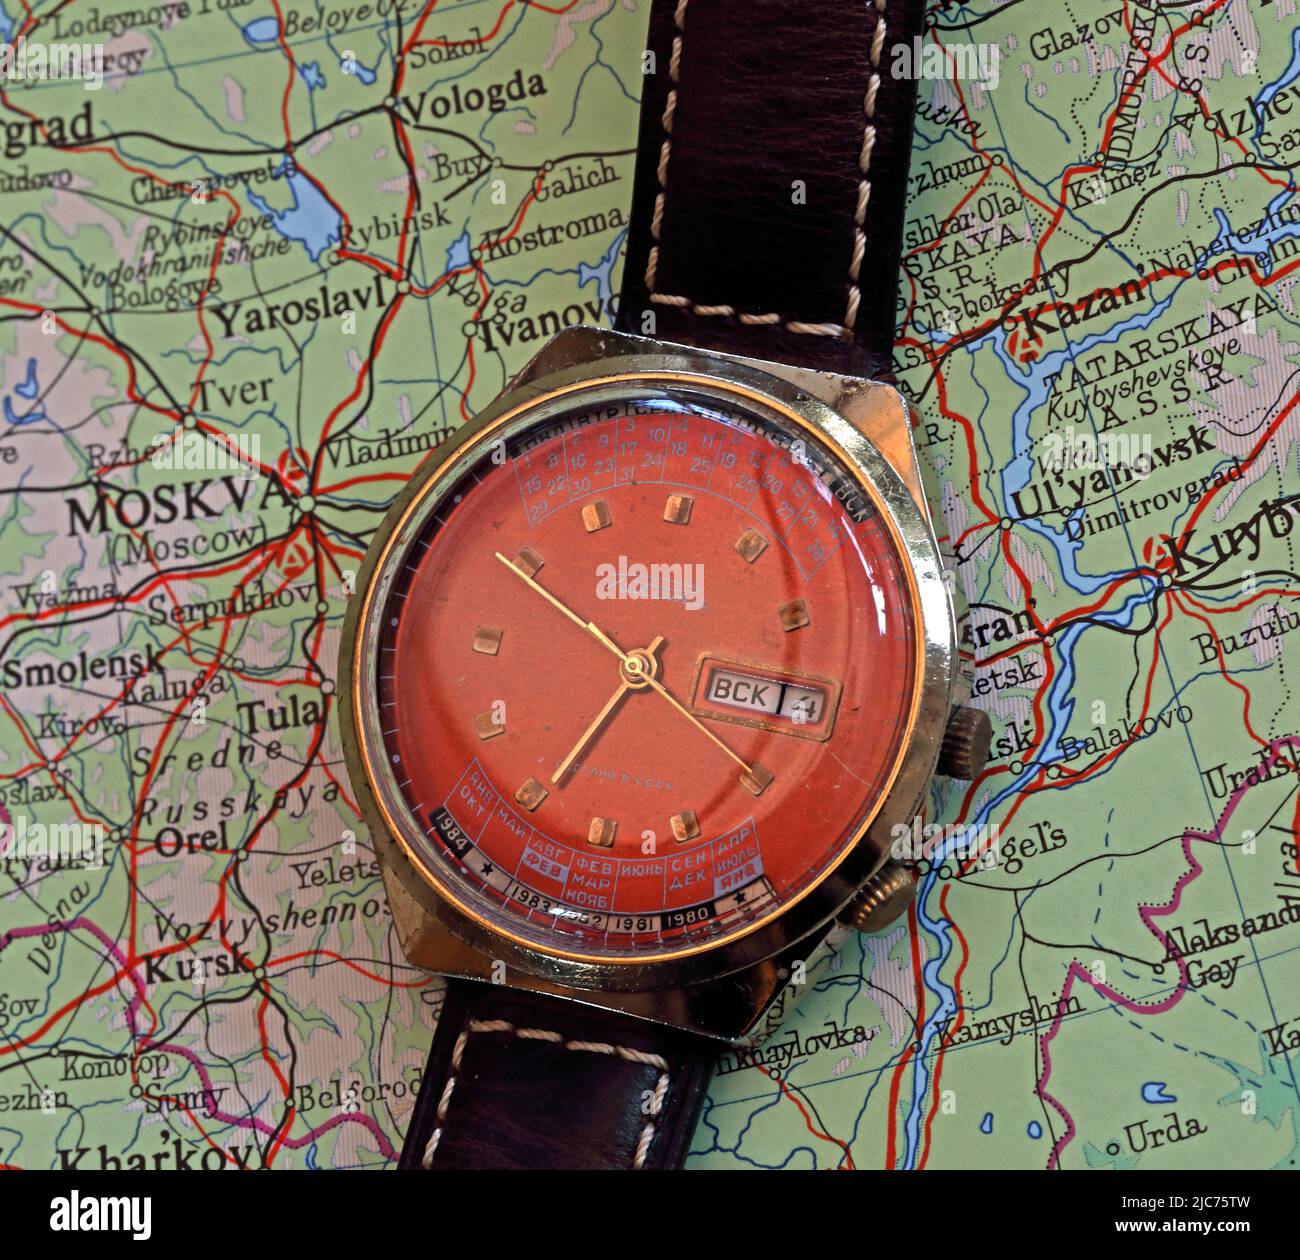 Raketa montre de calendrier perpétuel, de l'ancien CCCP / URSS, Russie - un produit de l'usine de montre de Moscou numéro un, sur une carte russe Banque D'Images